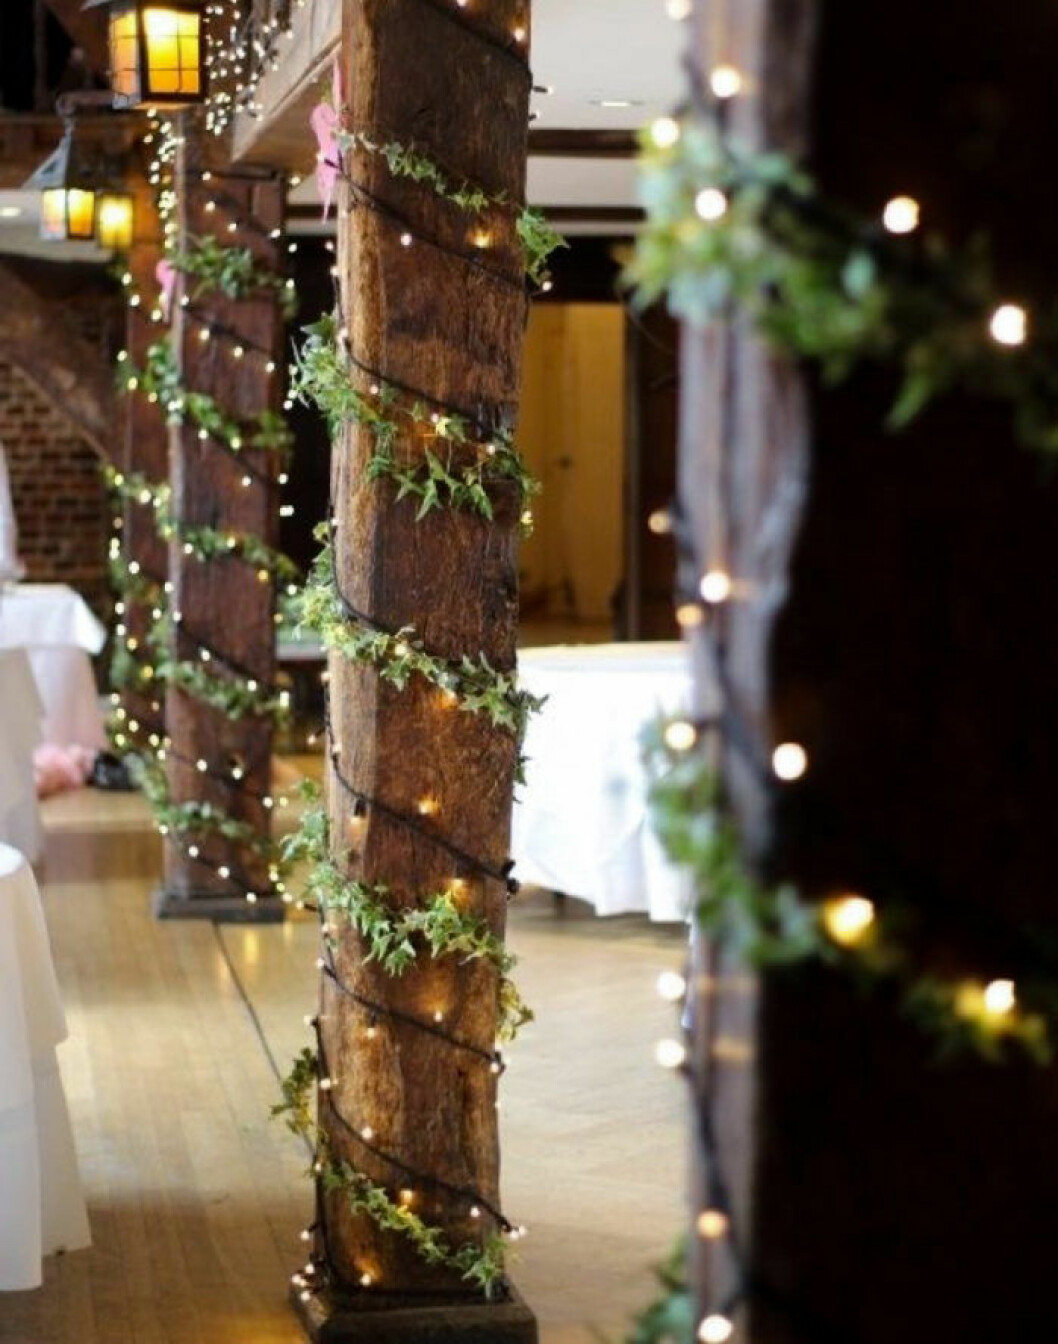 Ljusslingor och gröna dekorationer till bröllopet.